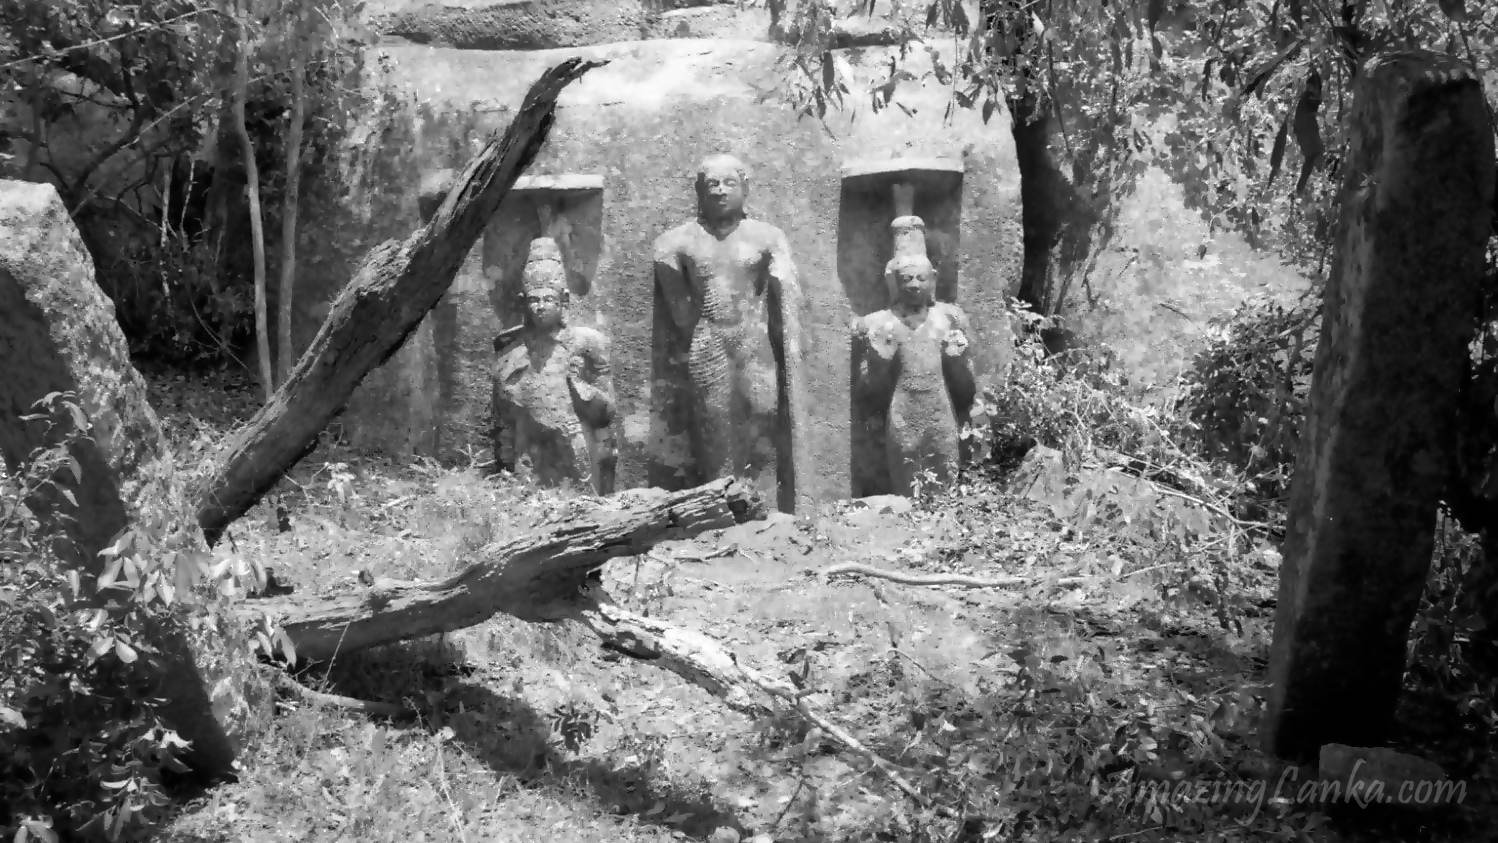 Wila Oya - Budupatuna Ruins as seen in 1985